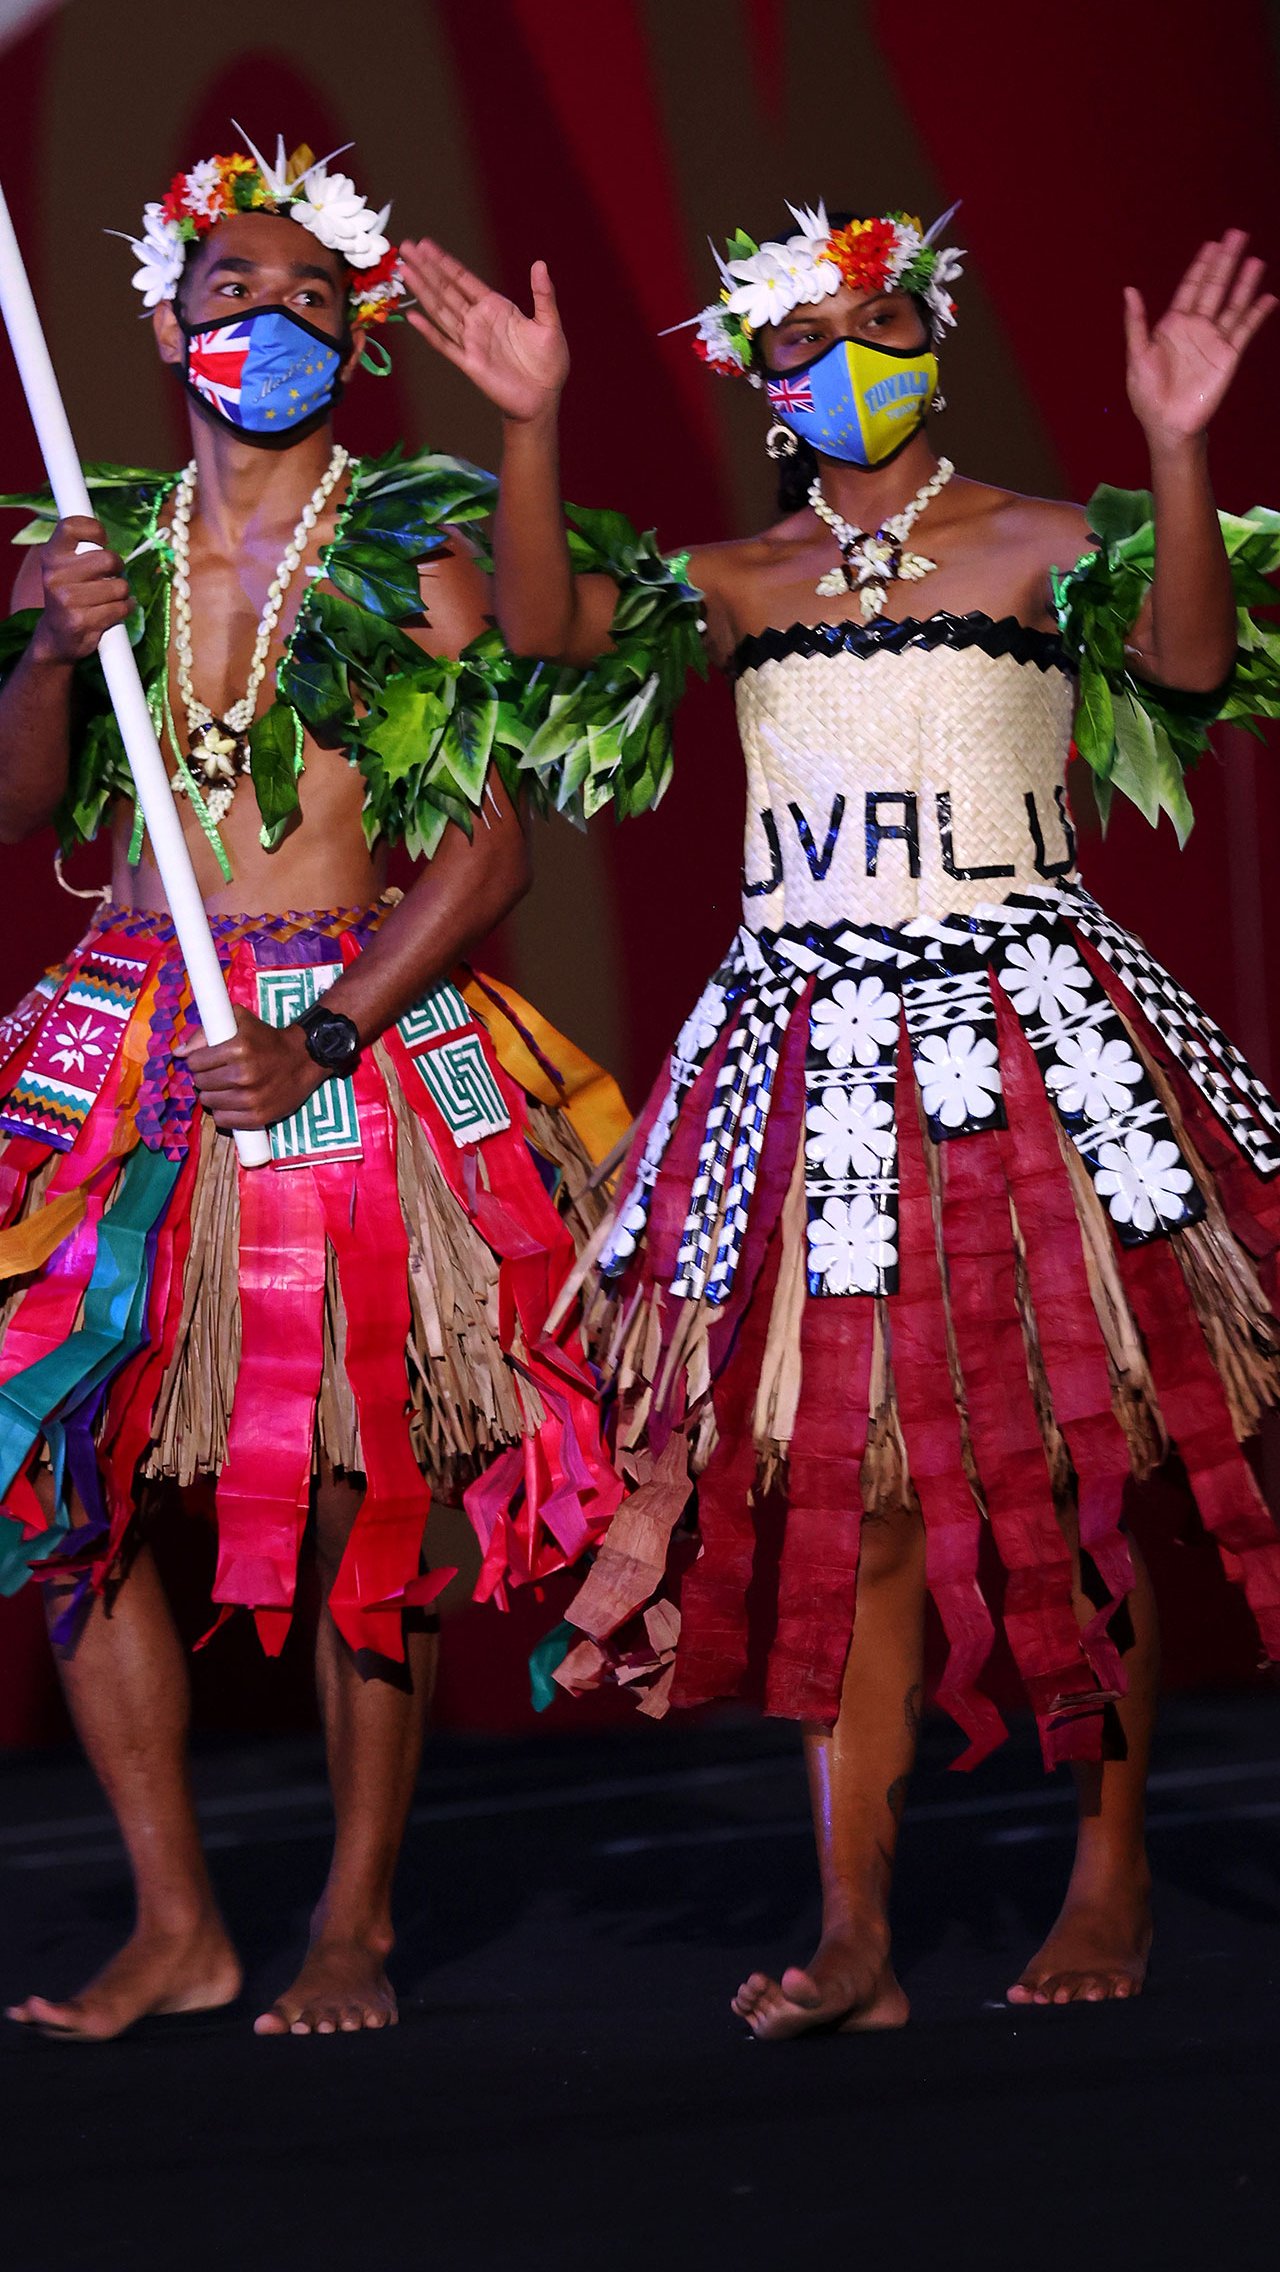 Неординарно выглядели знаменосцы сборной Тувалу. Атлеты были одеты в цветастые юбки с национальными узорами, их плечи были окутаны листьями, а на головах красовались цветочные венки.